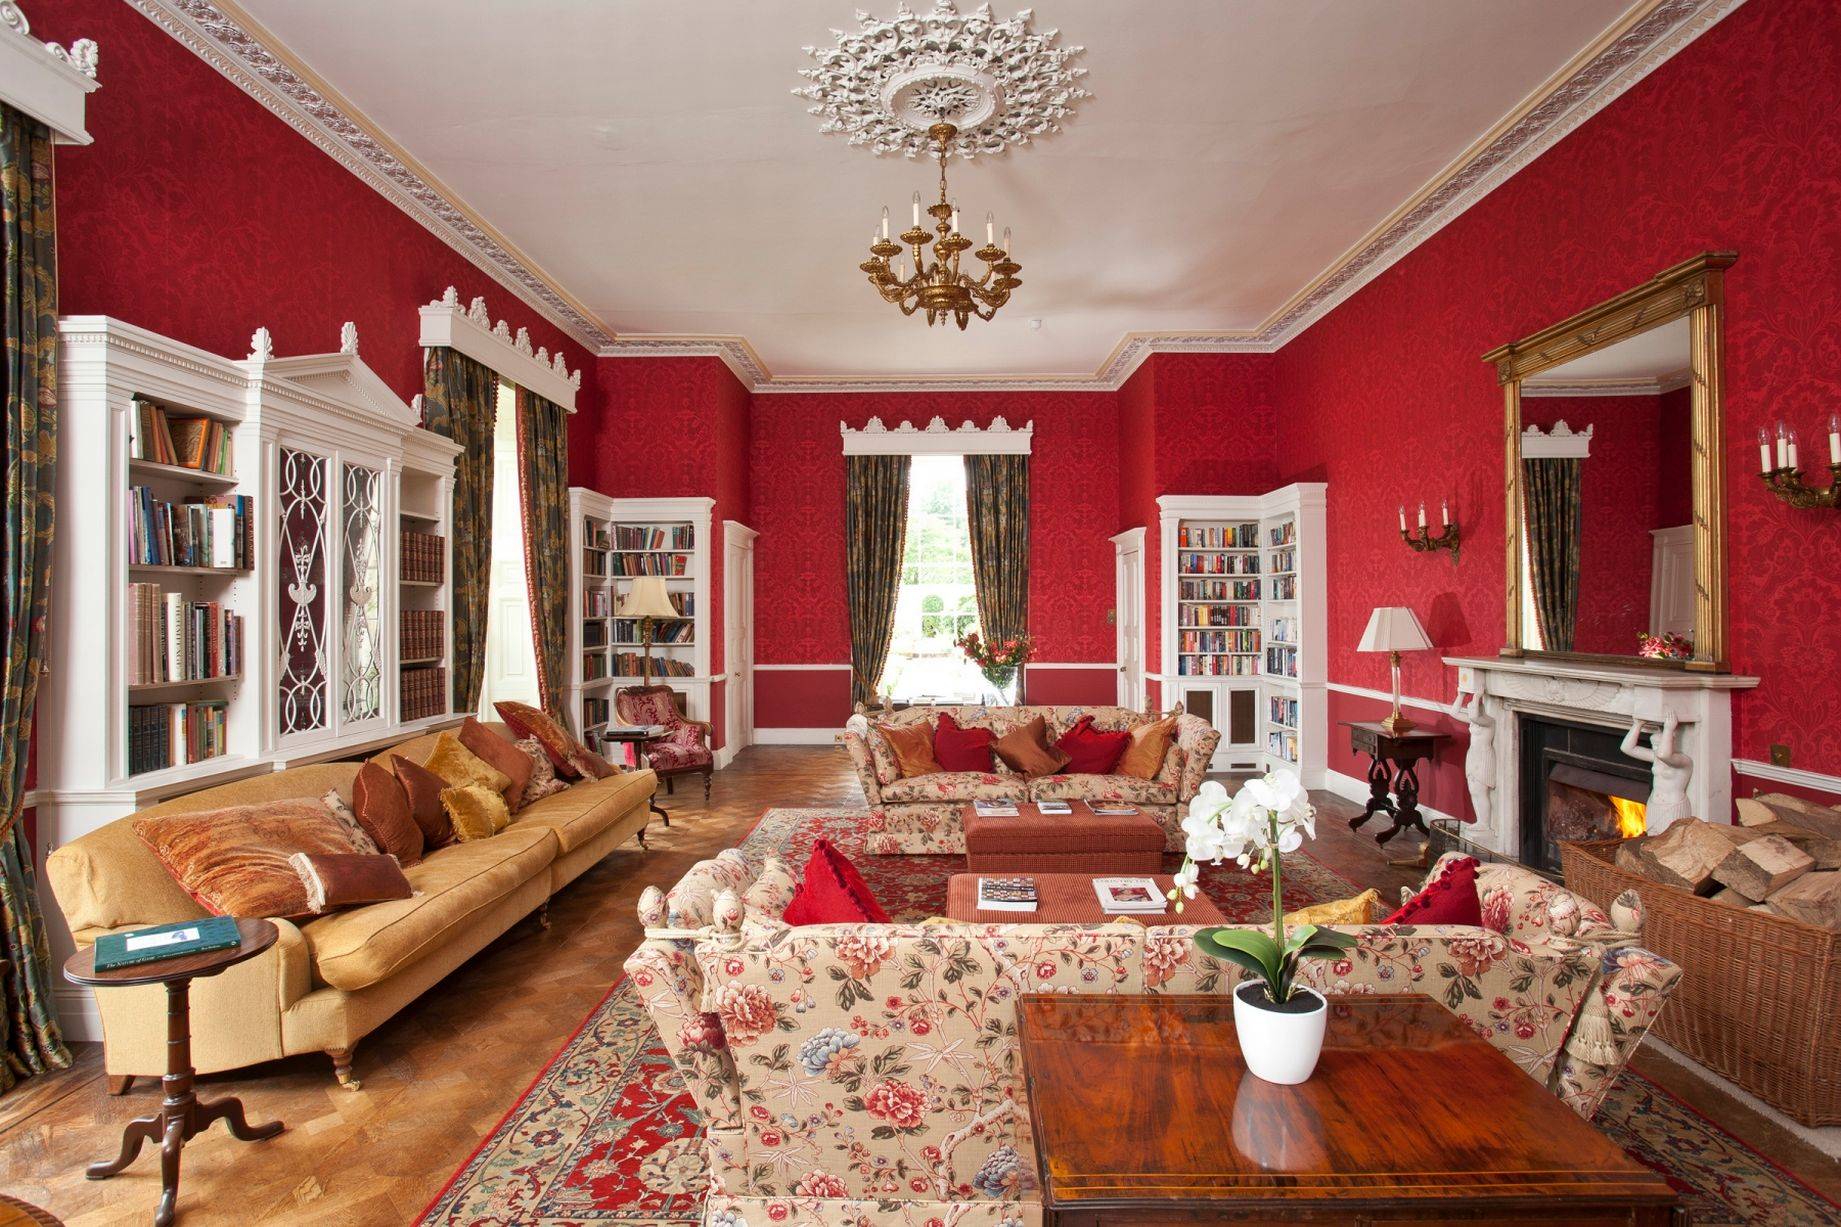 Salón con biblioteca y chimenea de piedra de estilo clásico, con papel pintado victoriano en color rojo y un rosetón en el techo